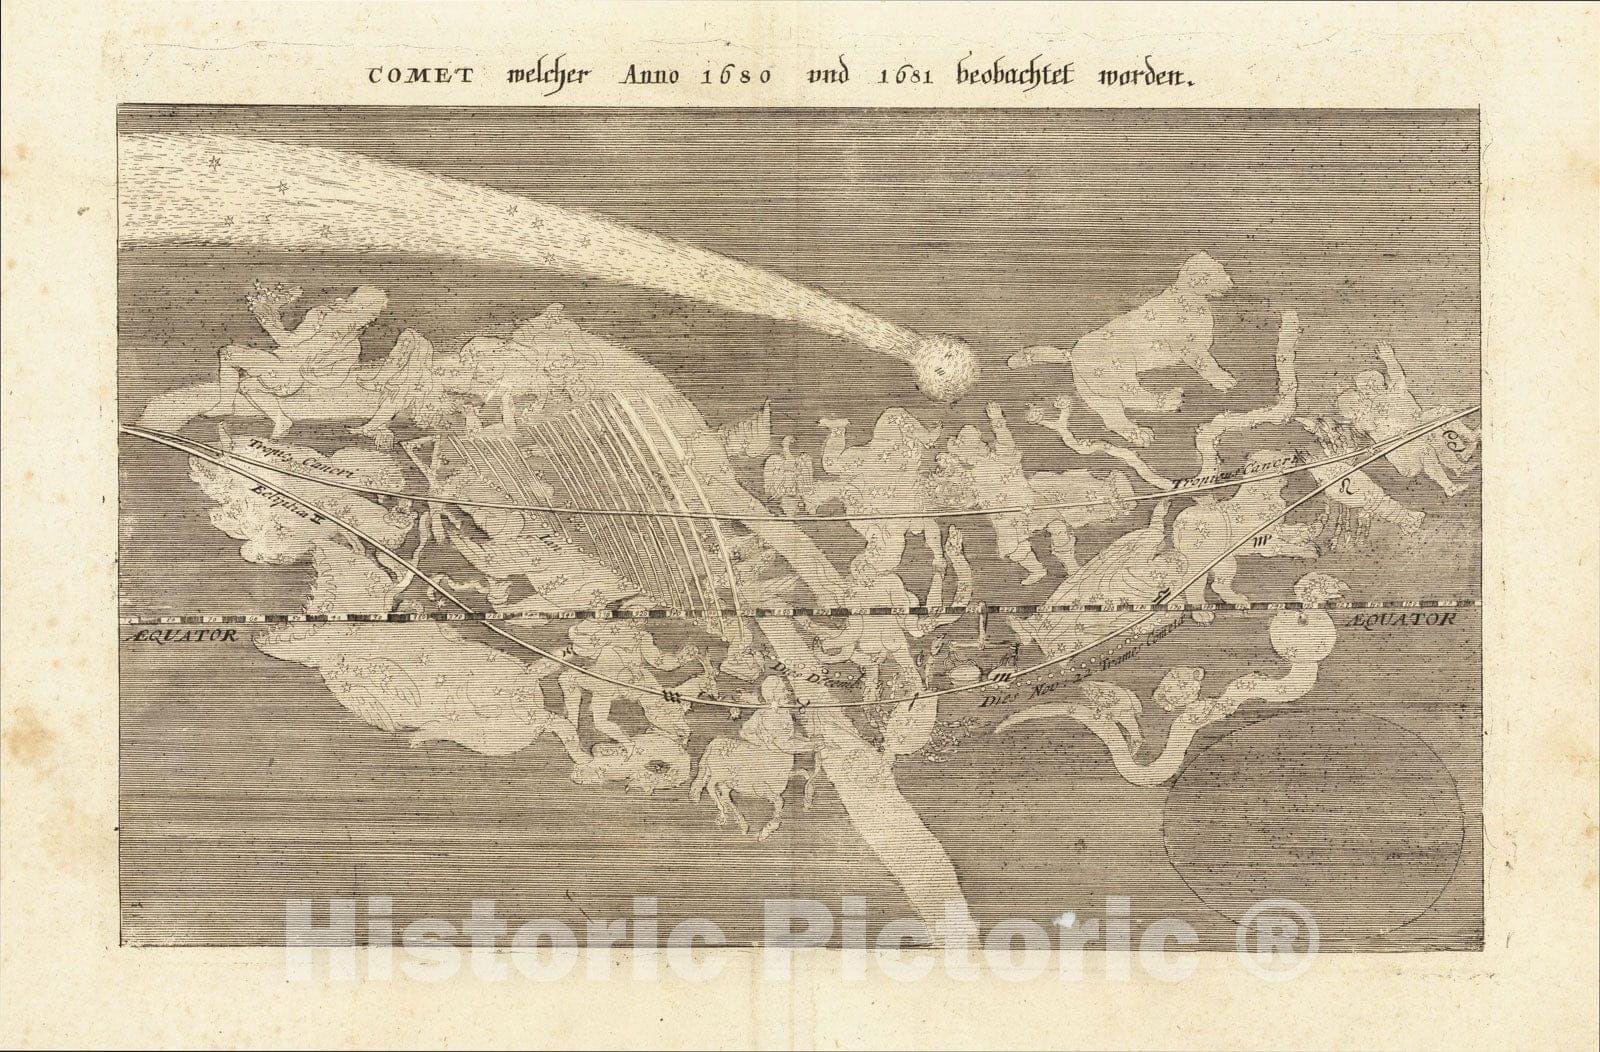 Historic Map : Comet Welcher Anno 1680 und 1681 beobachtet worden, 1696, Matthaus Merian, Vintage Wall Art